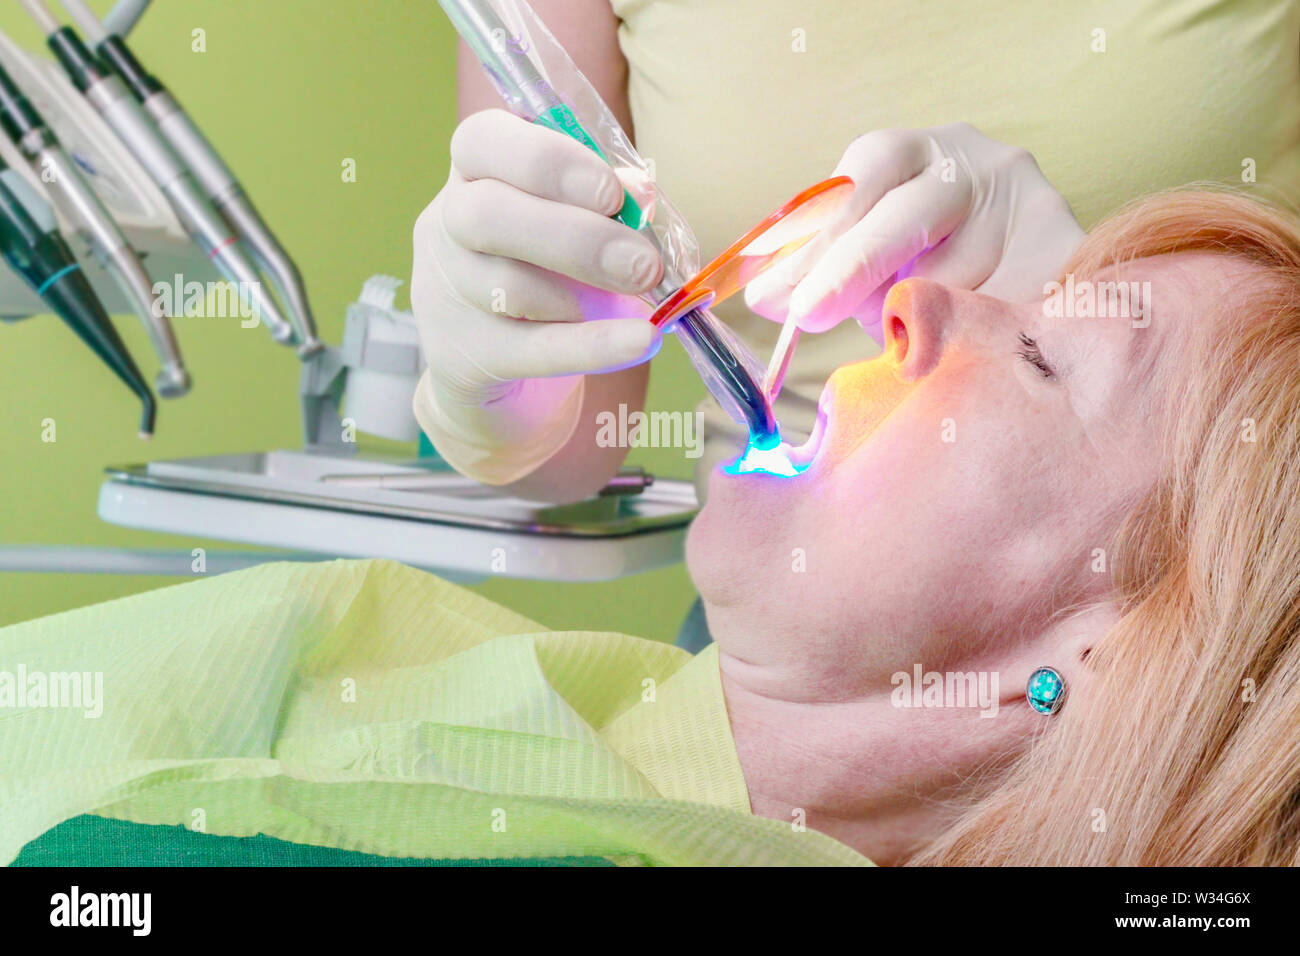 Ein in der Hand gehaltenes Wand strahlt, dass Primäre blaues Licht verwendet wird das Harz in eine zahnmedizinische Patienten öffnung zu kurieren. Stockfoto